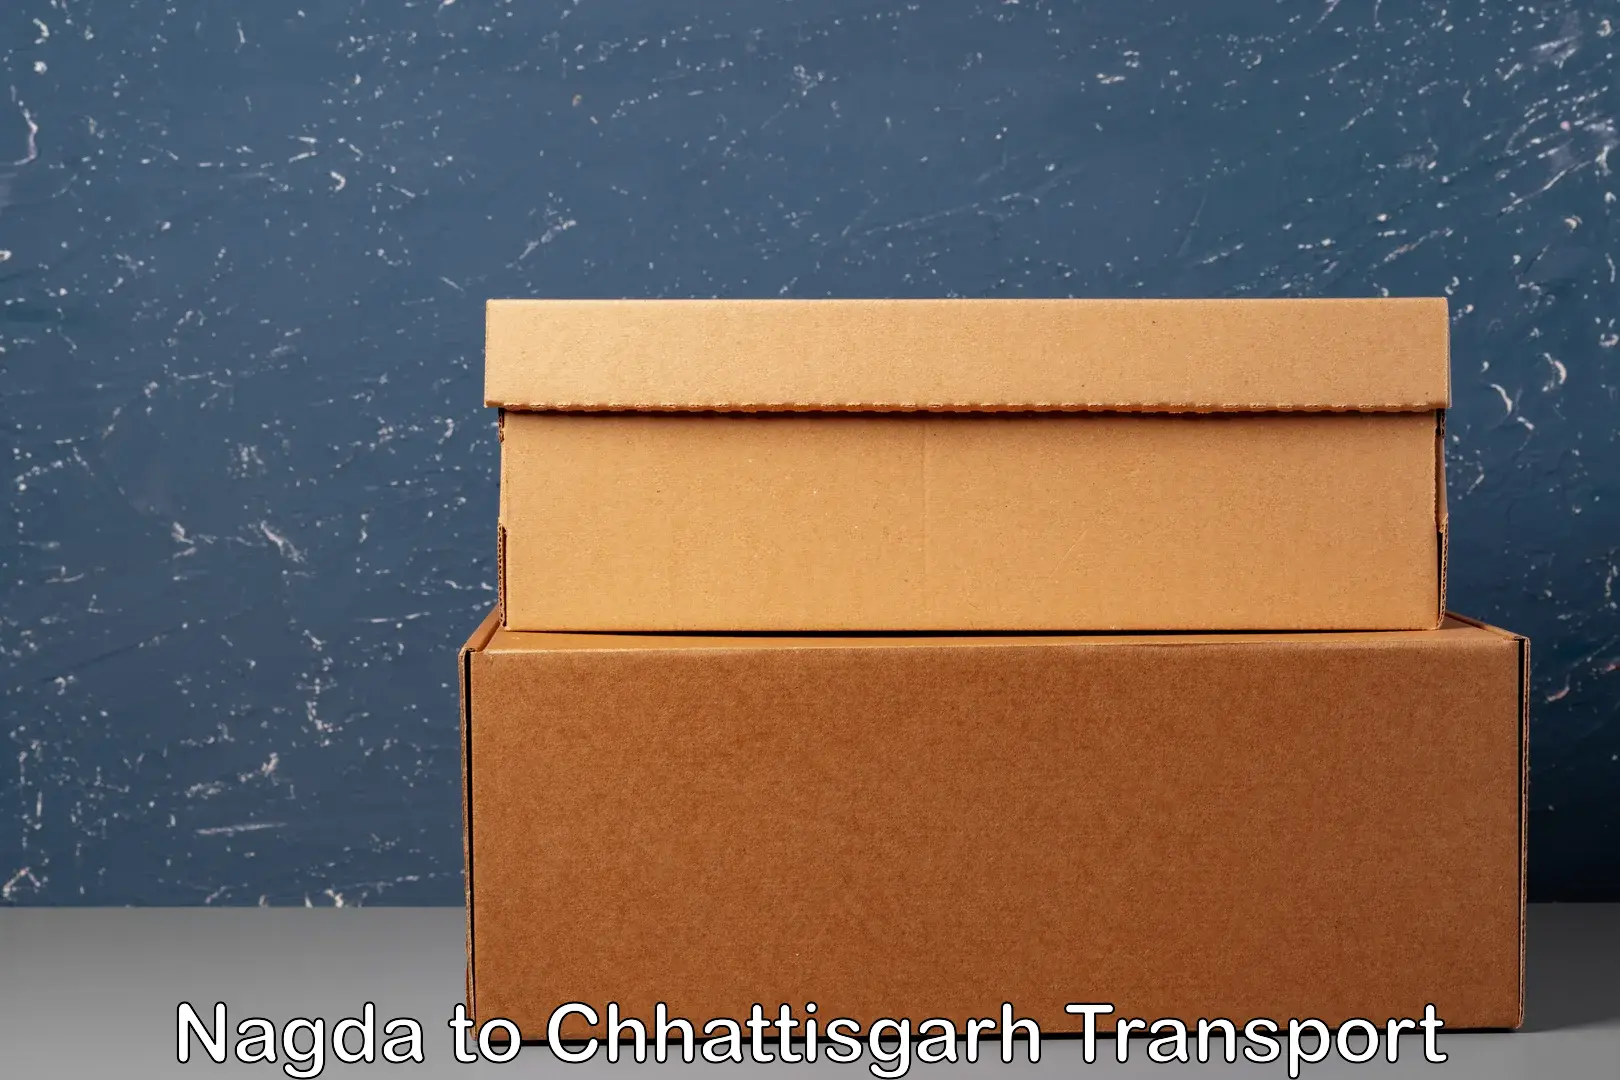 Online transport service Nagda to Chhattisgarh